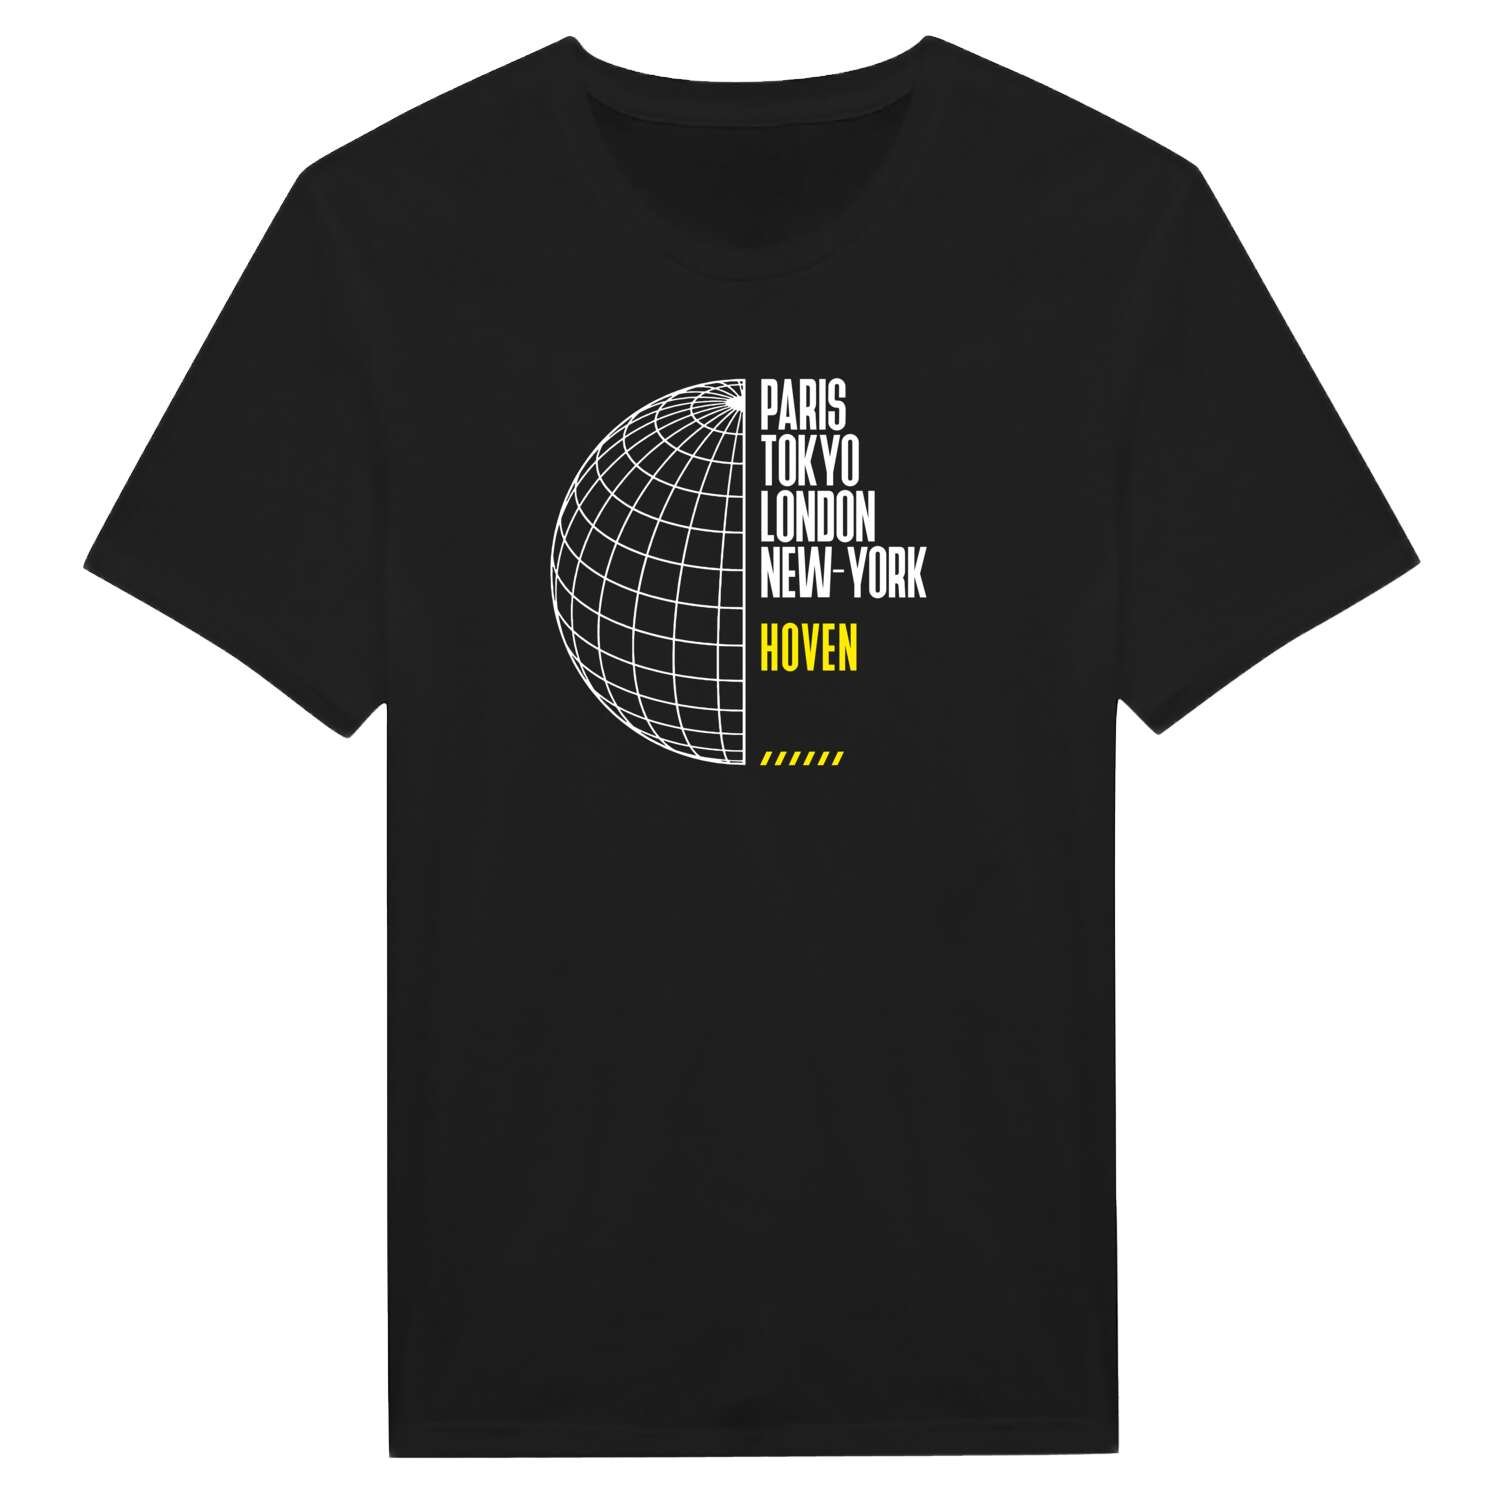 Hoven T-Shirt »Paris Tokyo London«